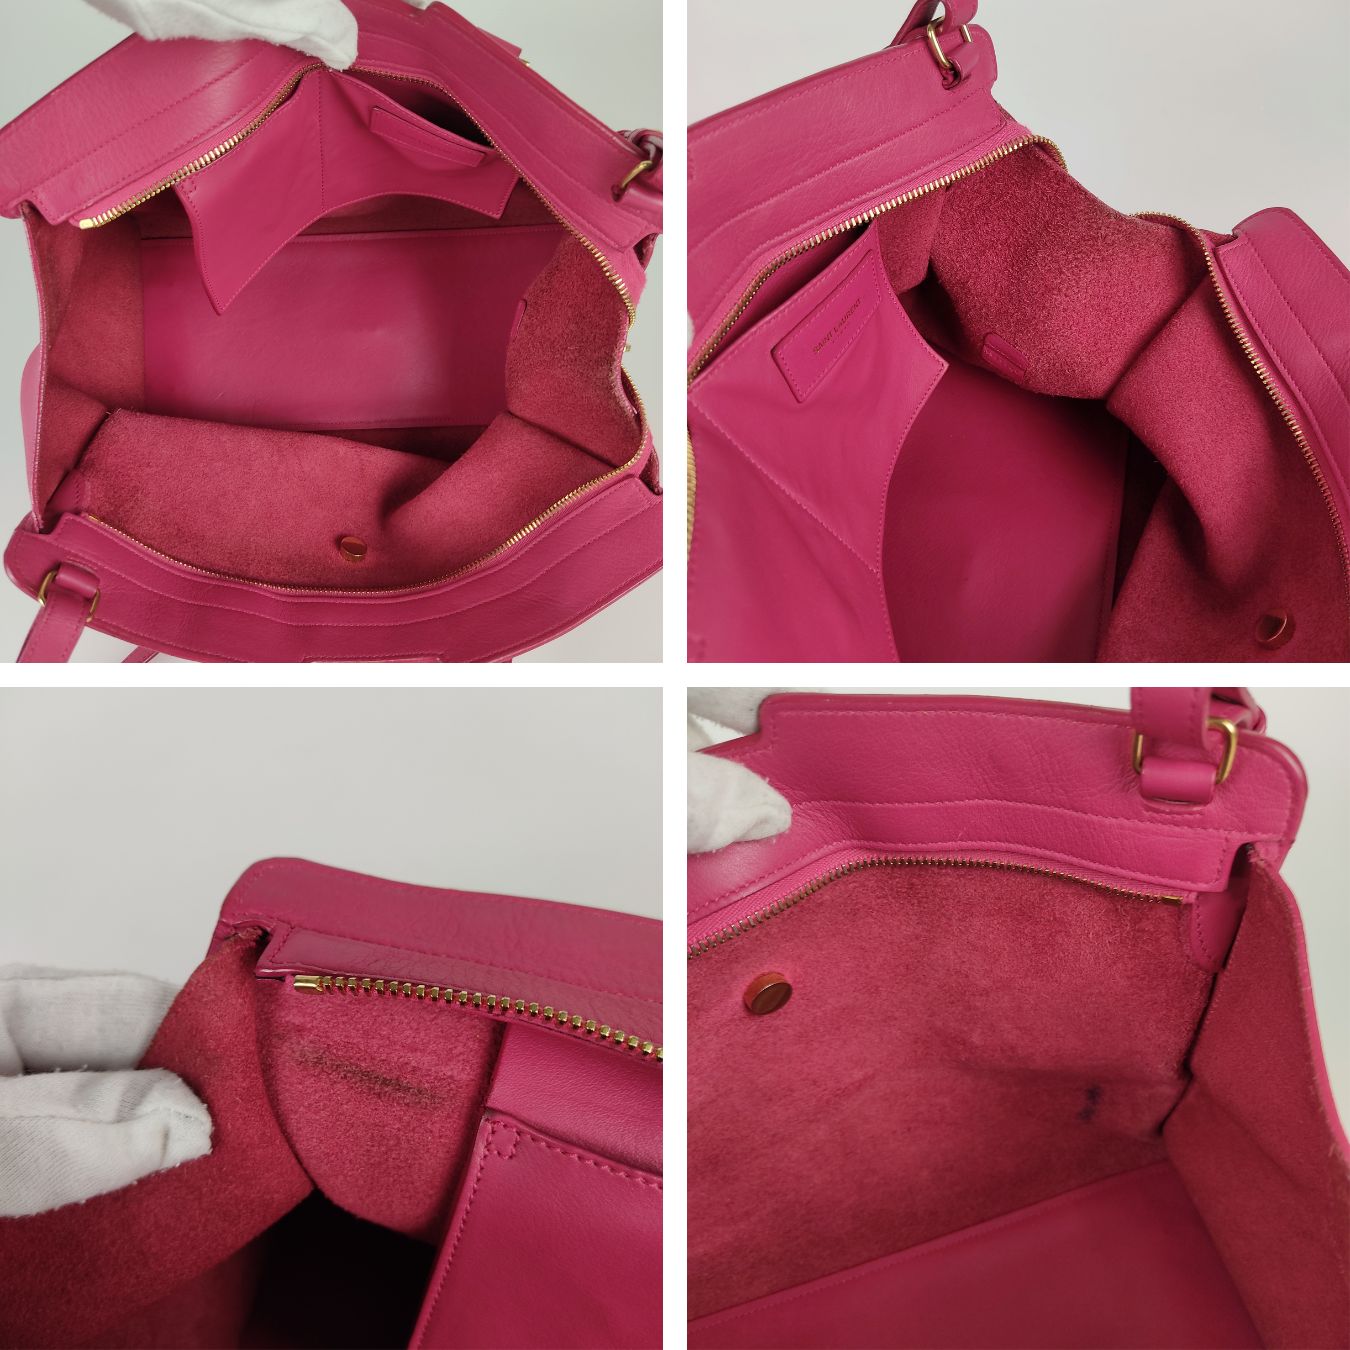 Handbags Yves Saint Laurent Saint Laurent Shoulder Bag Carrie avec Tassels Am